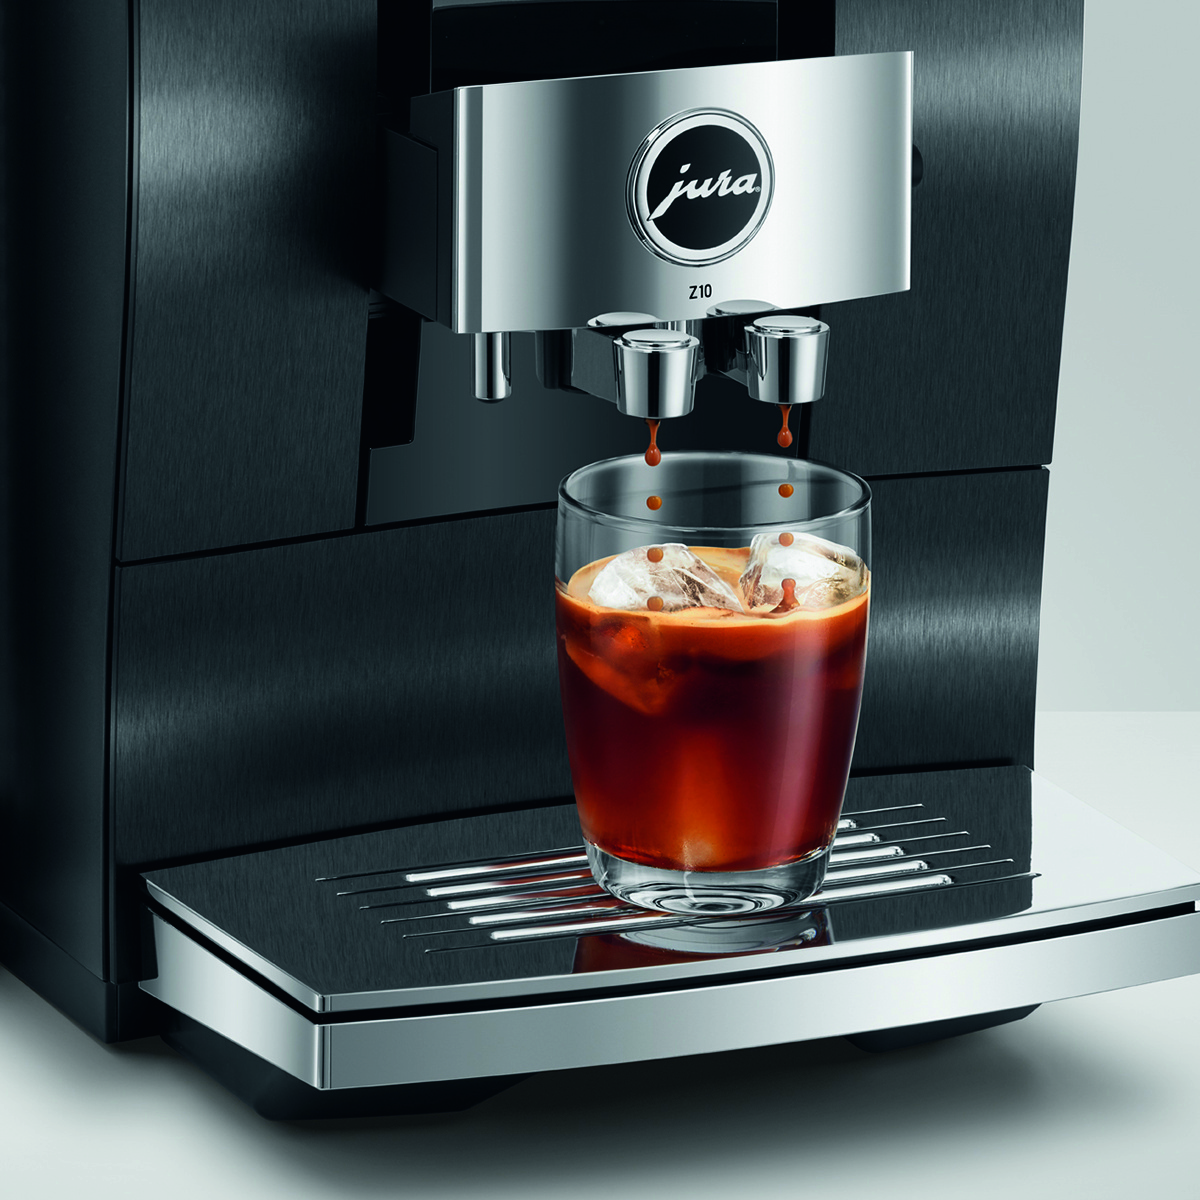 Nyhet från JURA - nya Z10 är en revolutionerande och exklusiv kaffemaskin som gör det godaste kaffet tu kan tänka dig.